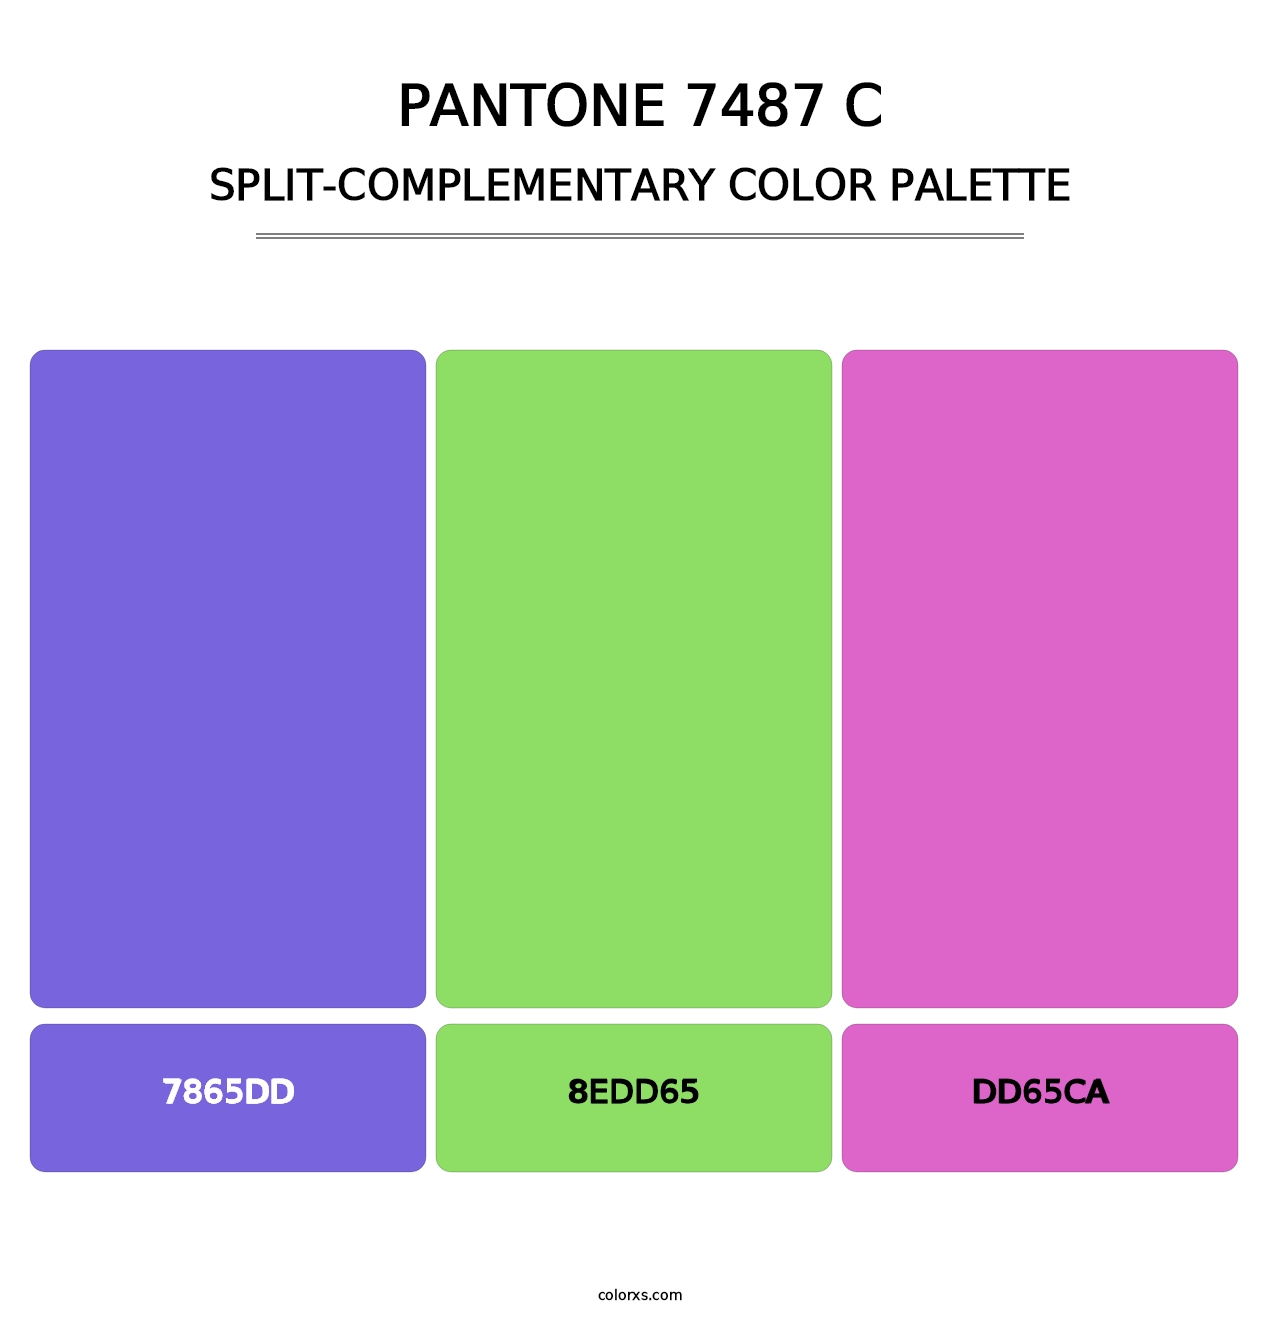 PANTONE 7487 C - Split-Complementary Color Palette